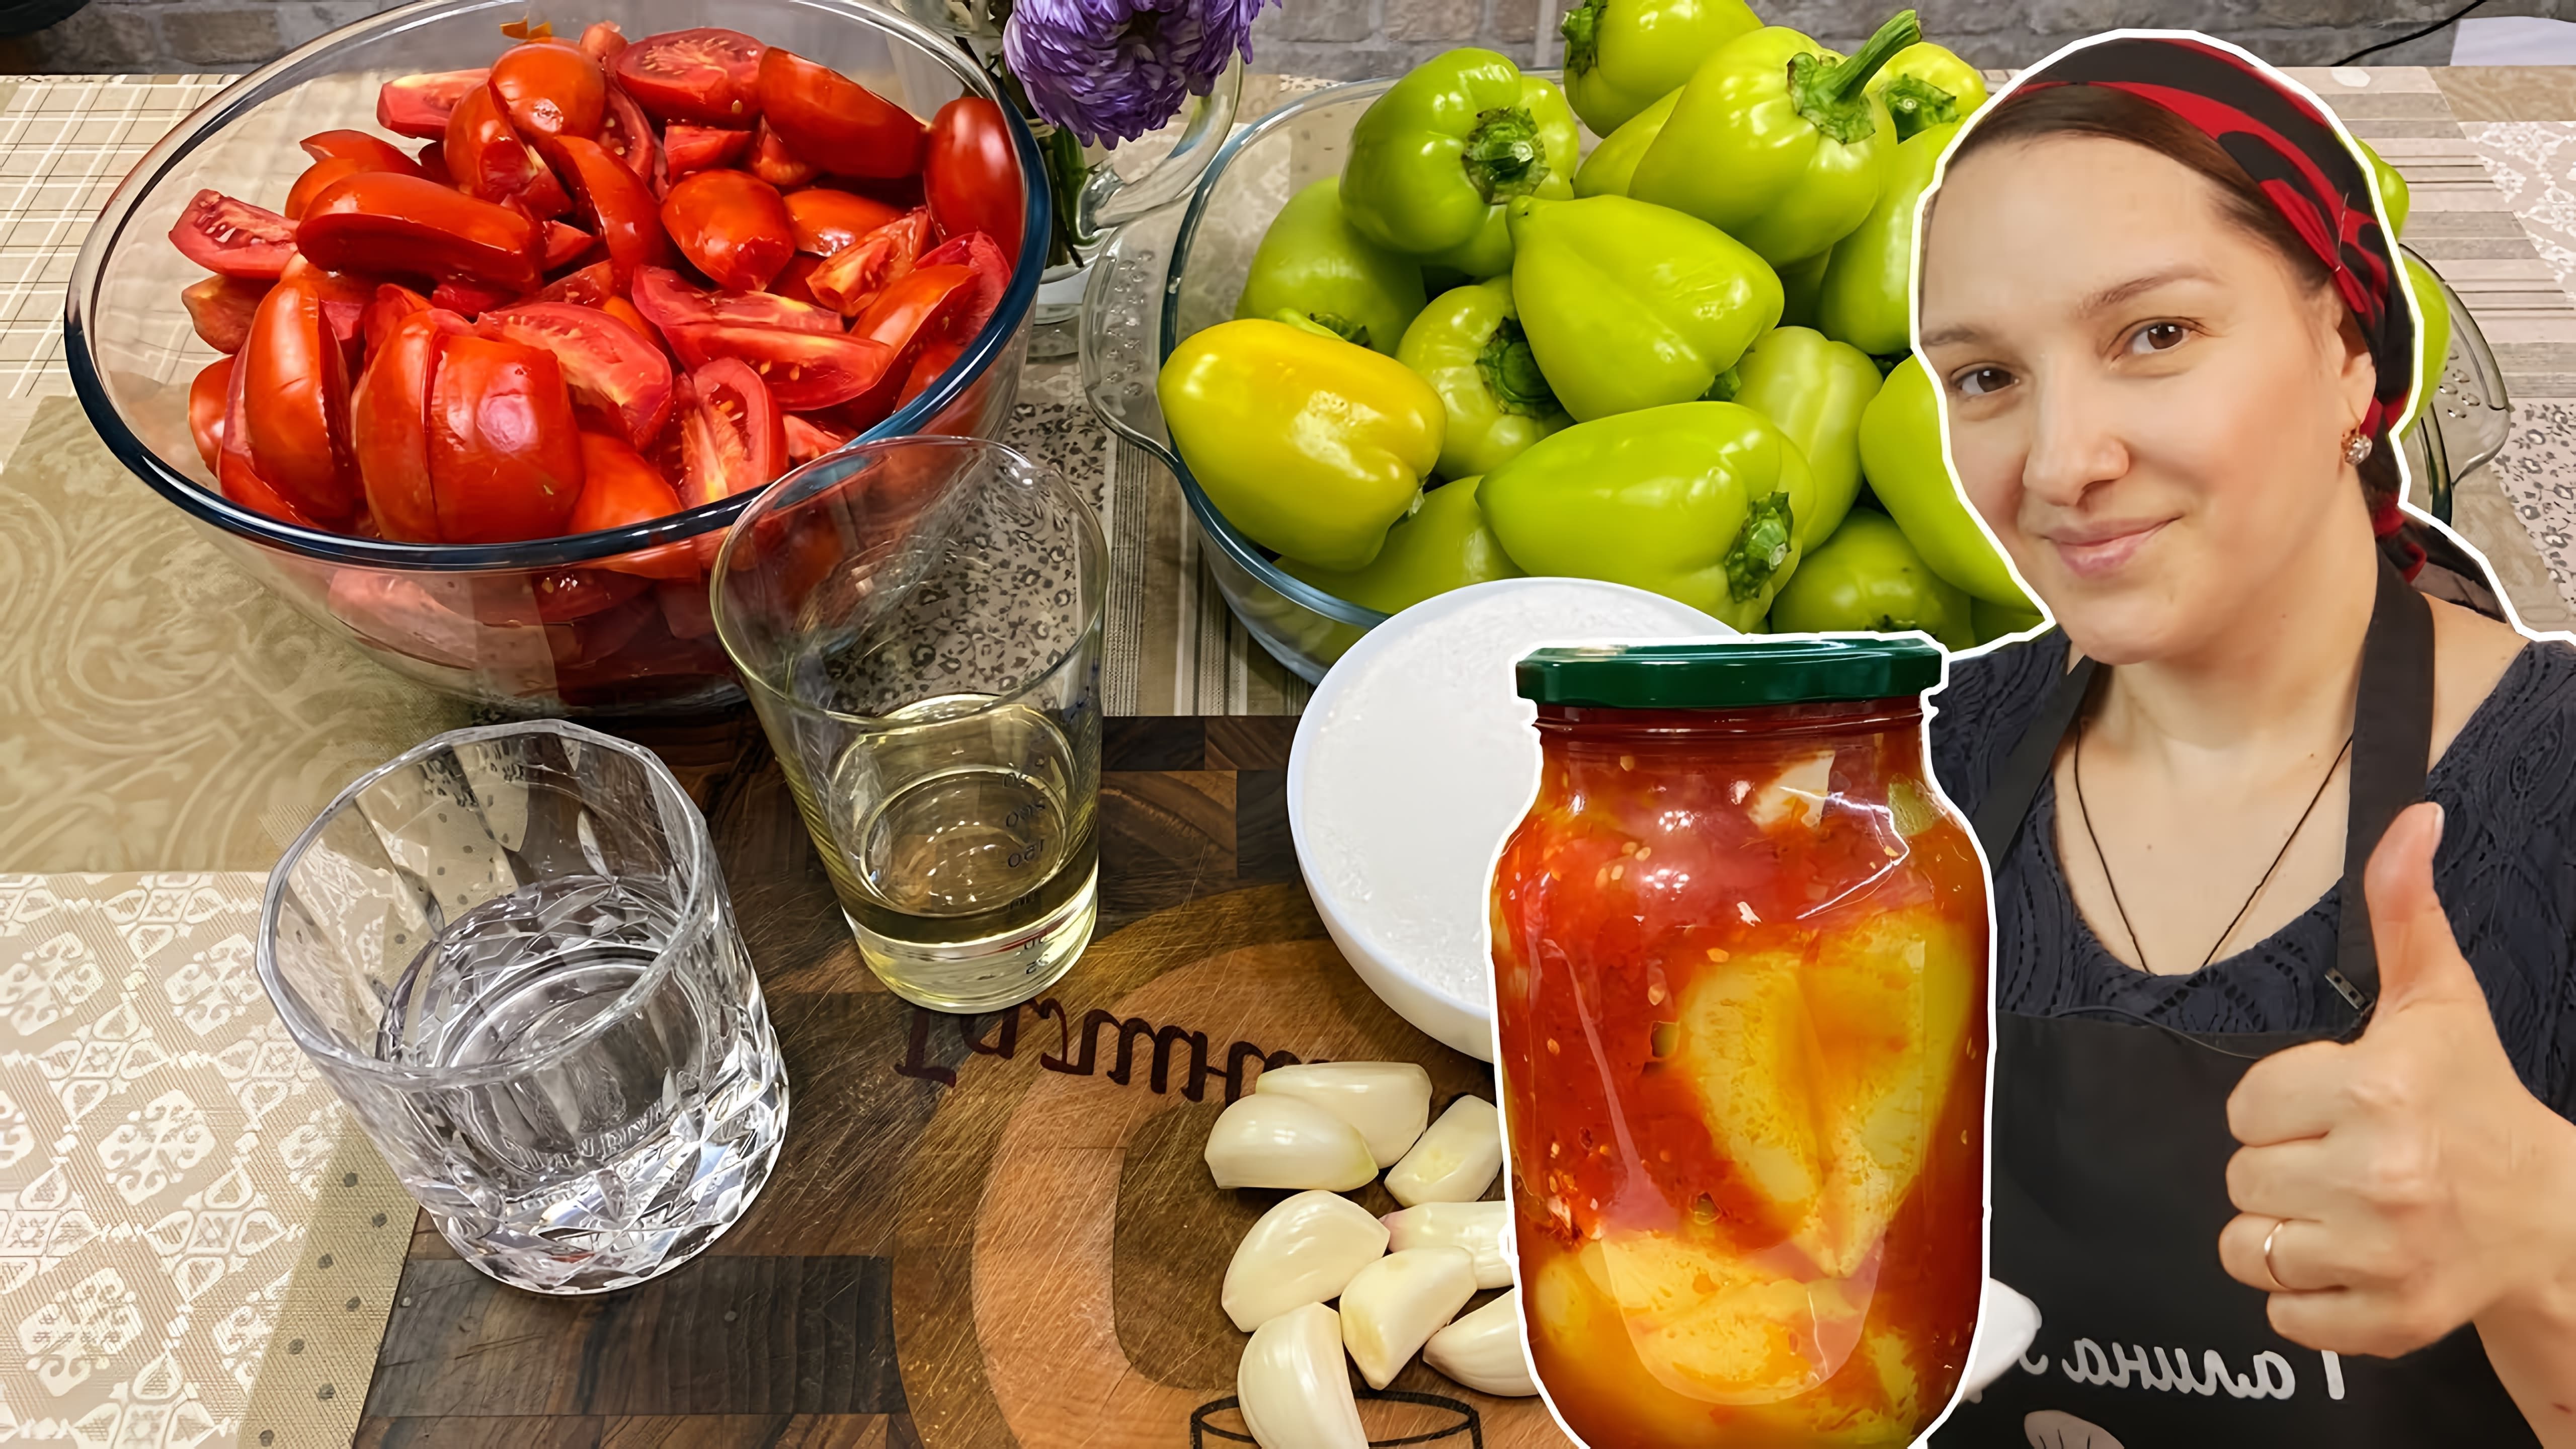 Видео как приготовить очень простое цыганское томатное и перечное консервированное блюдо под названием "лечо"